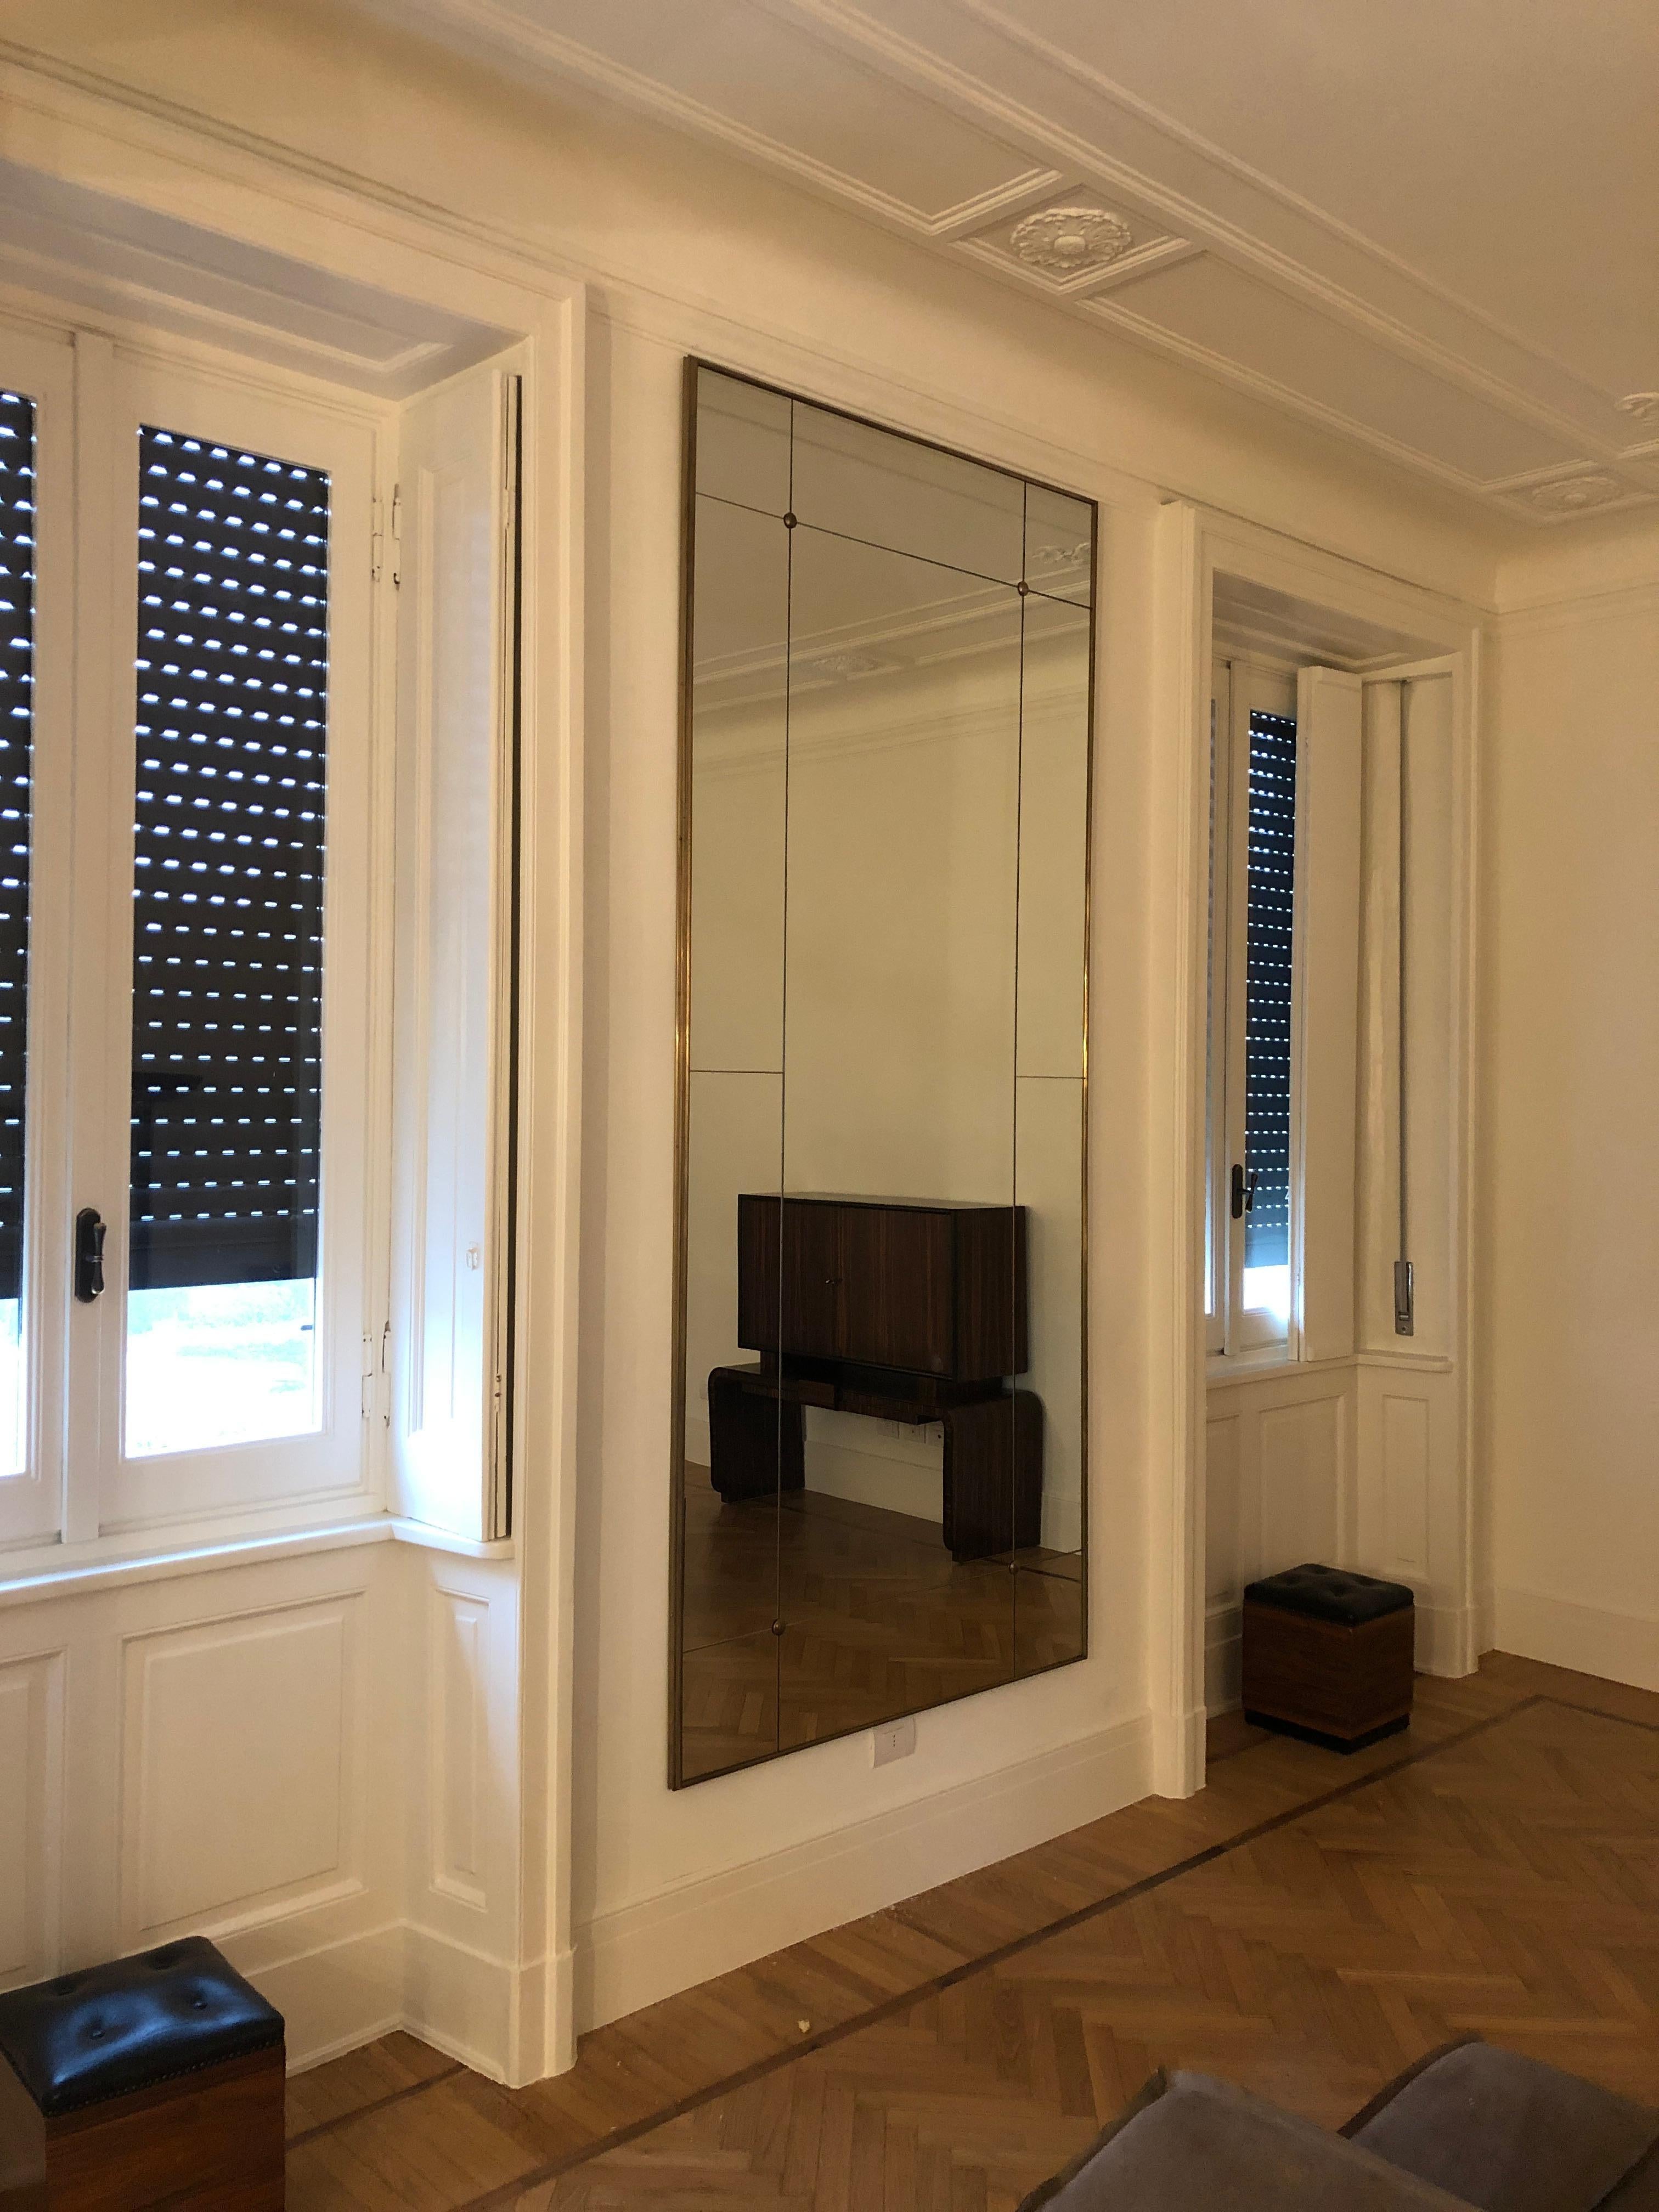 Pescetta präsentiert seine Kollektion von zeitgenössischen, individuell gestaltbaren Spiegeln.

Mit ihrem Messingrahmen, der Fensterscheibenoptik und den Messingnieten sind diese Spiegel der Idee des frühen 20. Jahrhunderts im Art-Déco-Stil